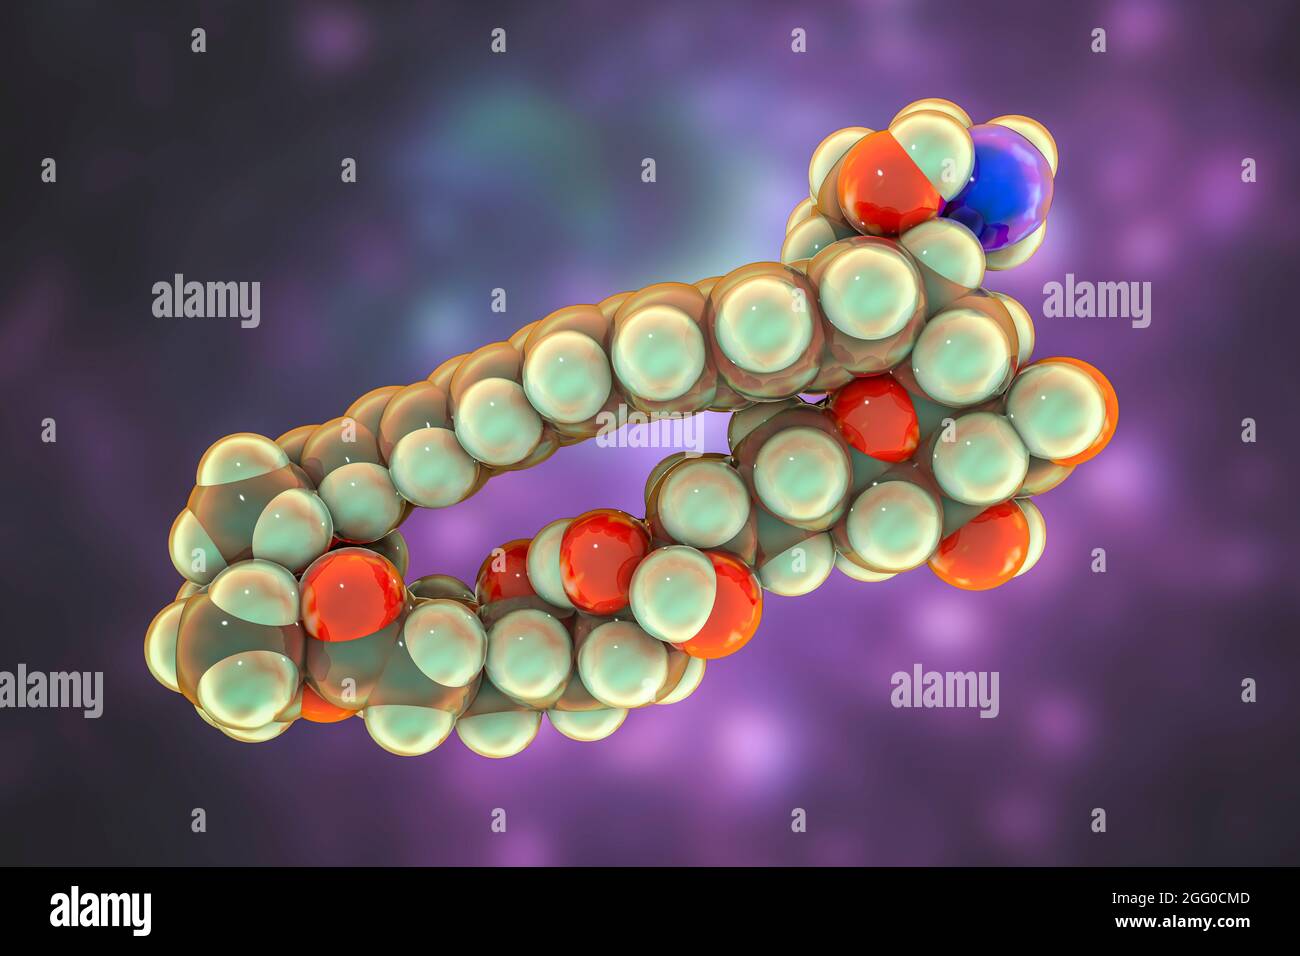 Anfotericina B molécula antifúngica de la droga, ilustración. La fórmula química es C47H73NO17. Los átomos se representan como esferas: Carbono (gris), hidrógeno (amarillo), nitrógeno (azul), oxígeno (rojo). Foto de stock